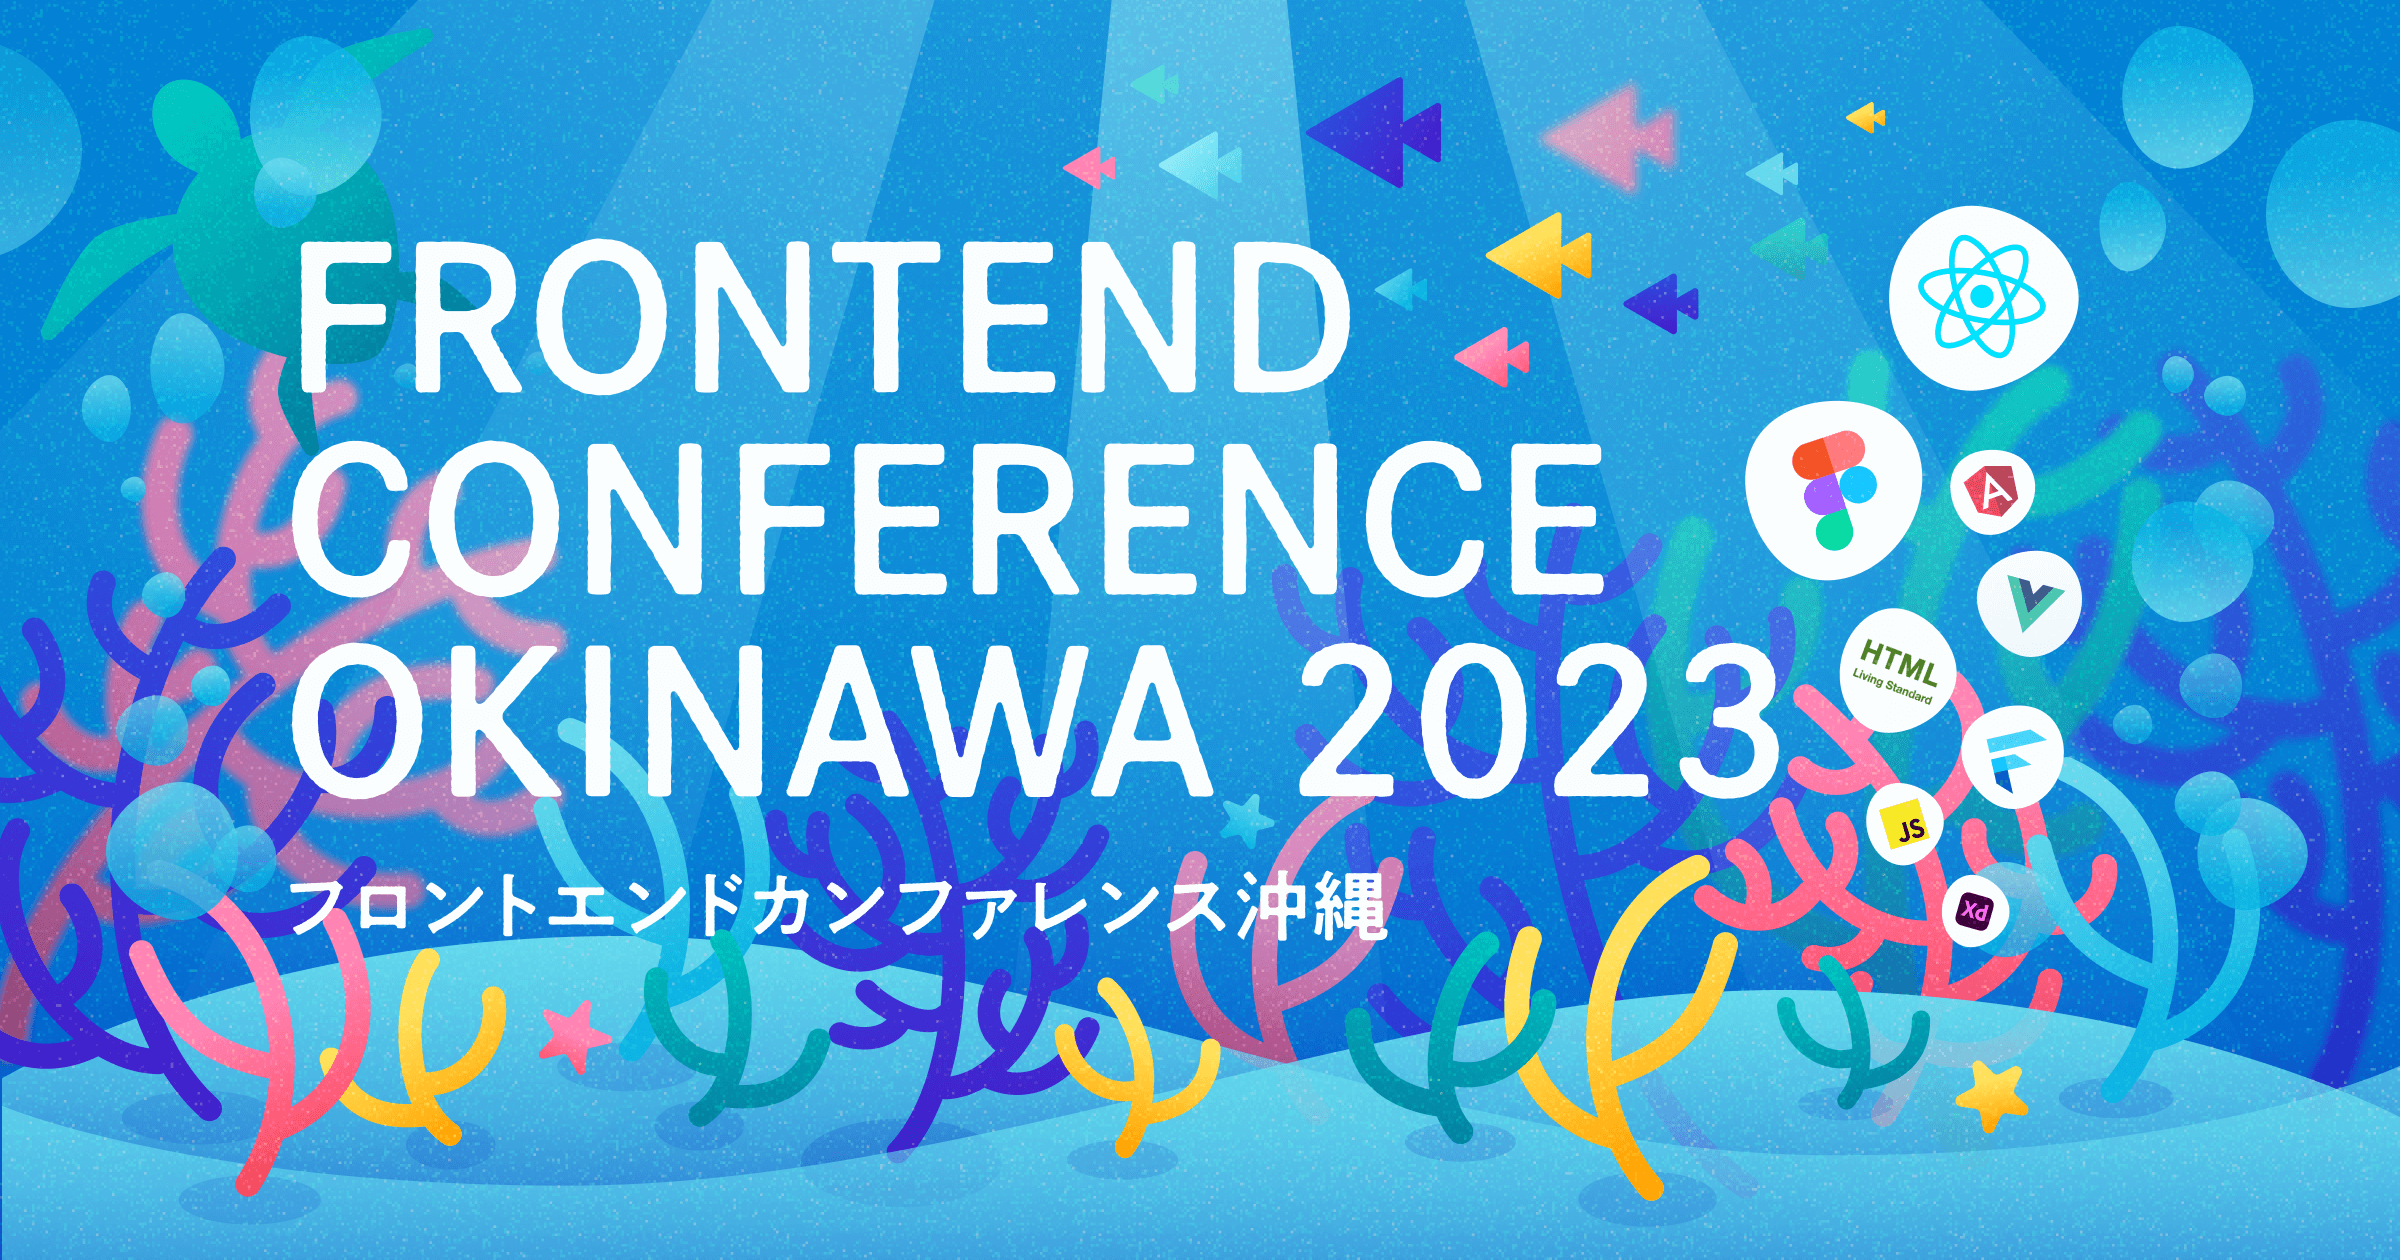 「フロントエンドカンファレンス沖縄 2023」のキービジュアル